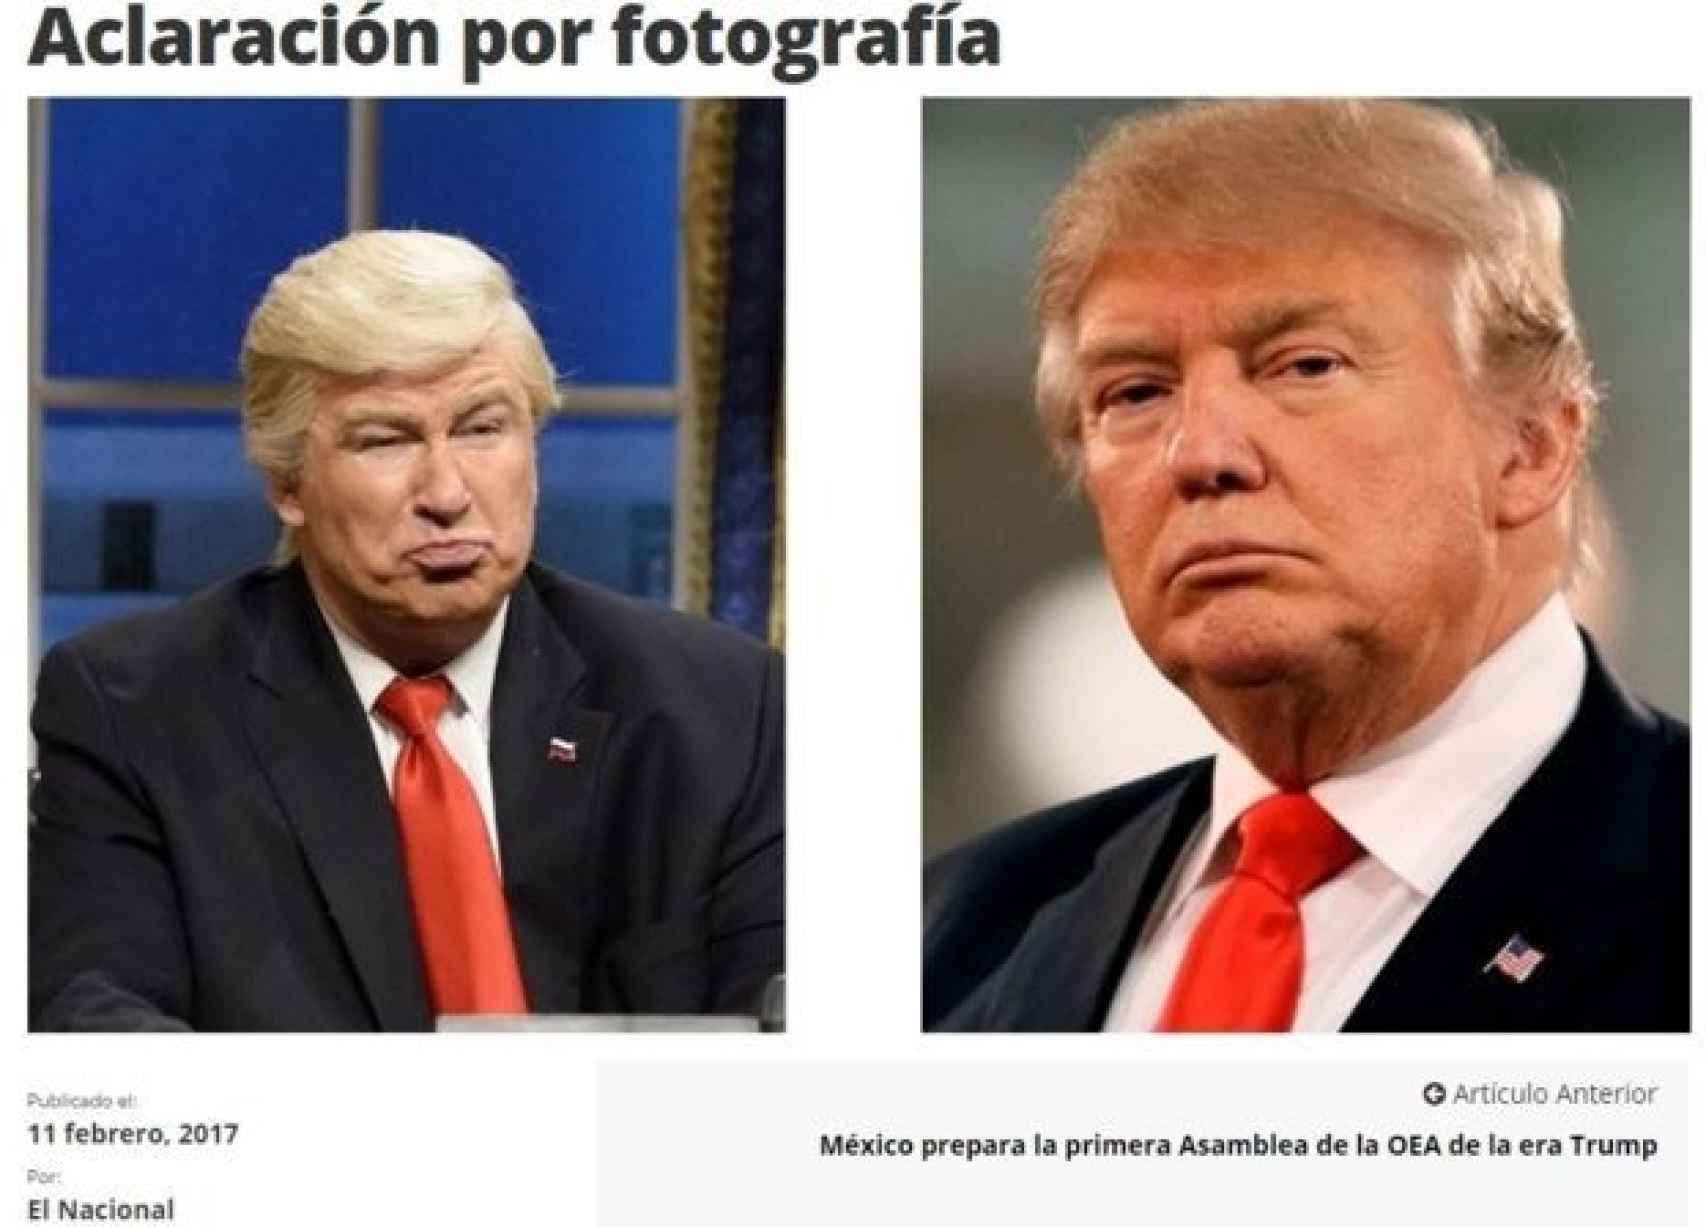 Las fotos de Baldwin y Trump ilustran la disculpa publicada por 'El Nacional'.